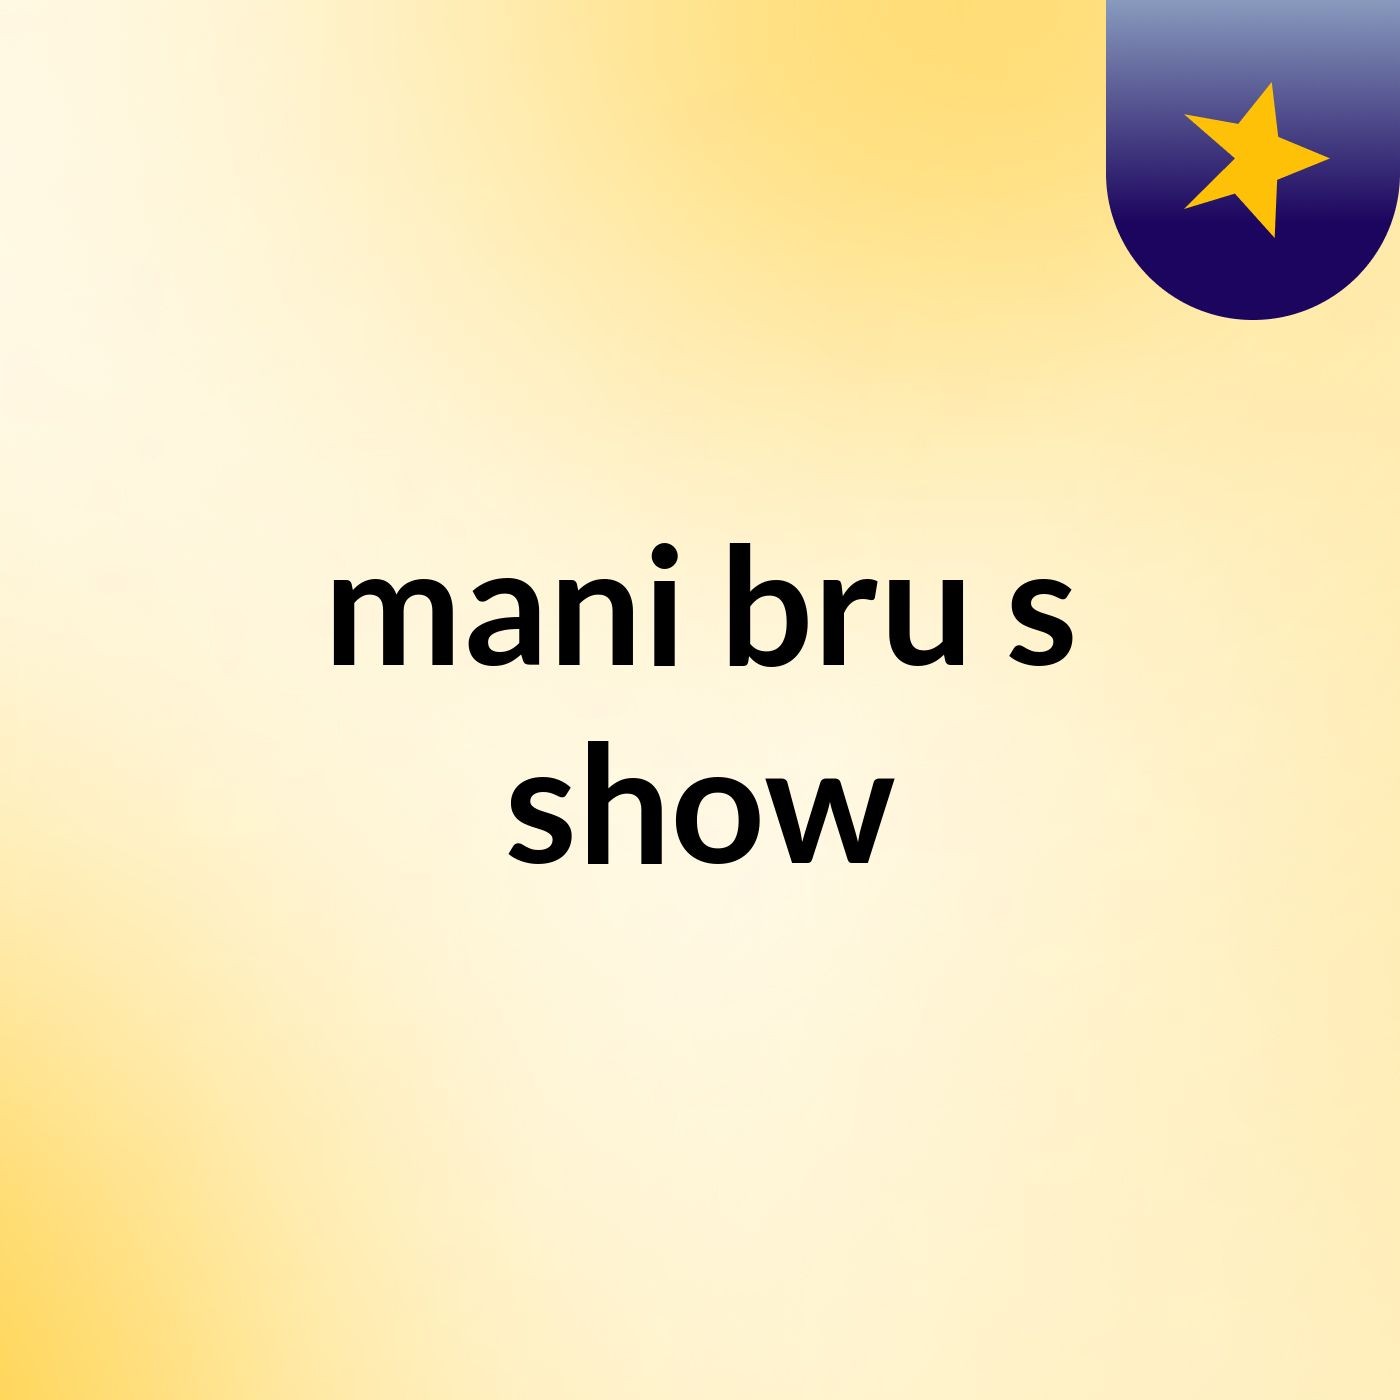 mani bru's show